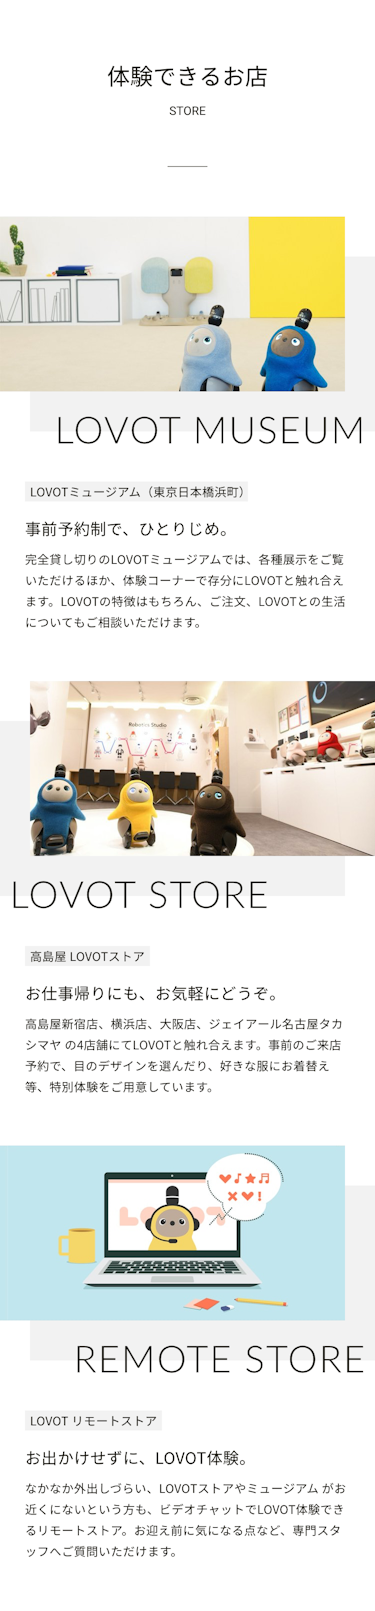 体験できるお店STORE　LOVOT MUSEUM　LOVOTミュージアム日本橋浜町　事前予約制で、ひとりじめ。完全貸し切りのLOVOTミュージアムでは、各種展示をご覧いただけるほか、体験コーナーで存分にLOVOTと触れ合えます。常駐スタッフがLOVOTの特徴や、ご注文、LOVOTとの生活についてもご相談いただけます。　LOVOT STORE　高島屋 LOVOTストア　お仕事帰りにも、お気軽にどうぞ。高島屋新宿店、横浜店、大阪店、ジェイアール名古屋タカシマヤ の4店舗にてLOVOTと触れ合えます。事前のご来店申し込みで、目のデザインを選んだり、好きな服にお着替え等、特別体験をご用意しています。　REMOTE STORE　LOVOT リモートストアお出かけせずに、LOVOT体験。なかなか外出しづらい、LOVOTストアやミュージアム がお近くにないという方も、ビデオチャットでLOVOT体験できるリモートストア。お迎え前に気になる点など、専門スタッフへご質問いただけます。